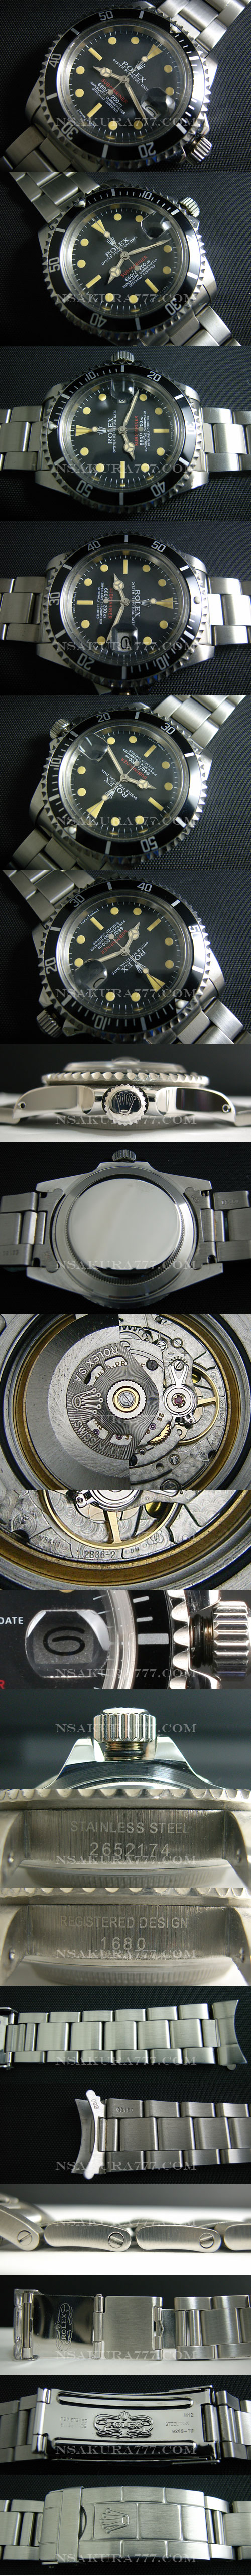 レプリカ時計 ロレックスサブマリーナ 1680旧サブ 赤サブ初期モデル最新改良白2836-2搭載 - ウインドウを閉じる